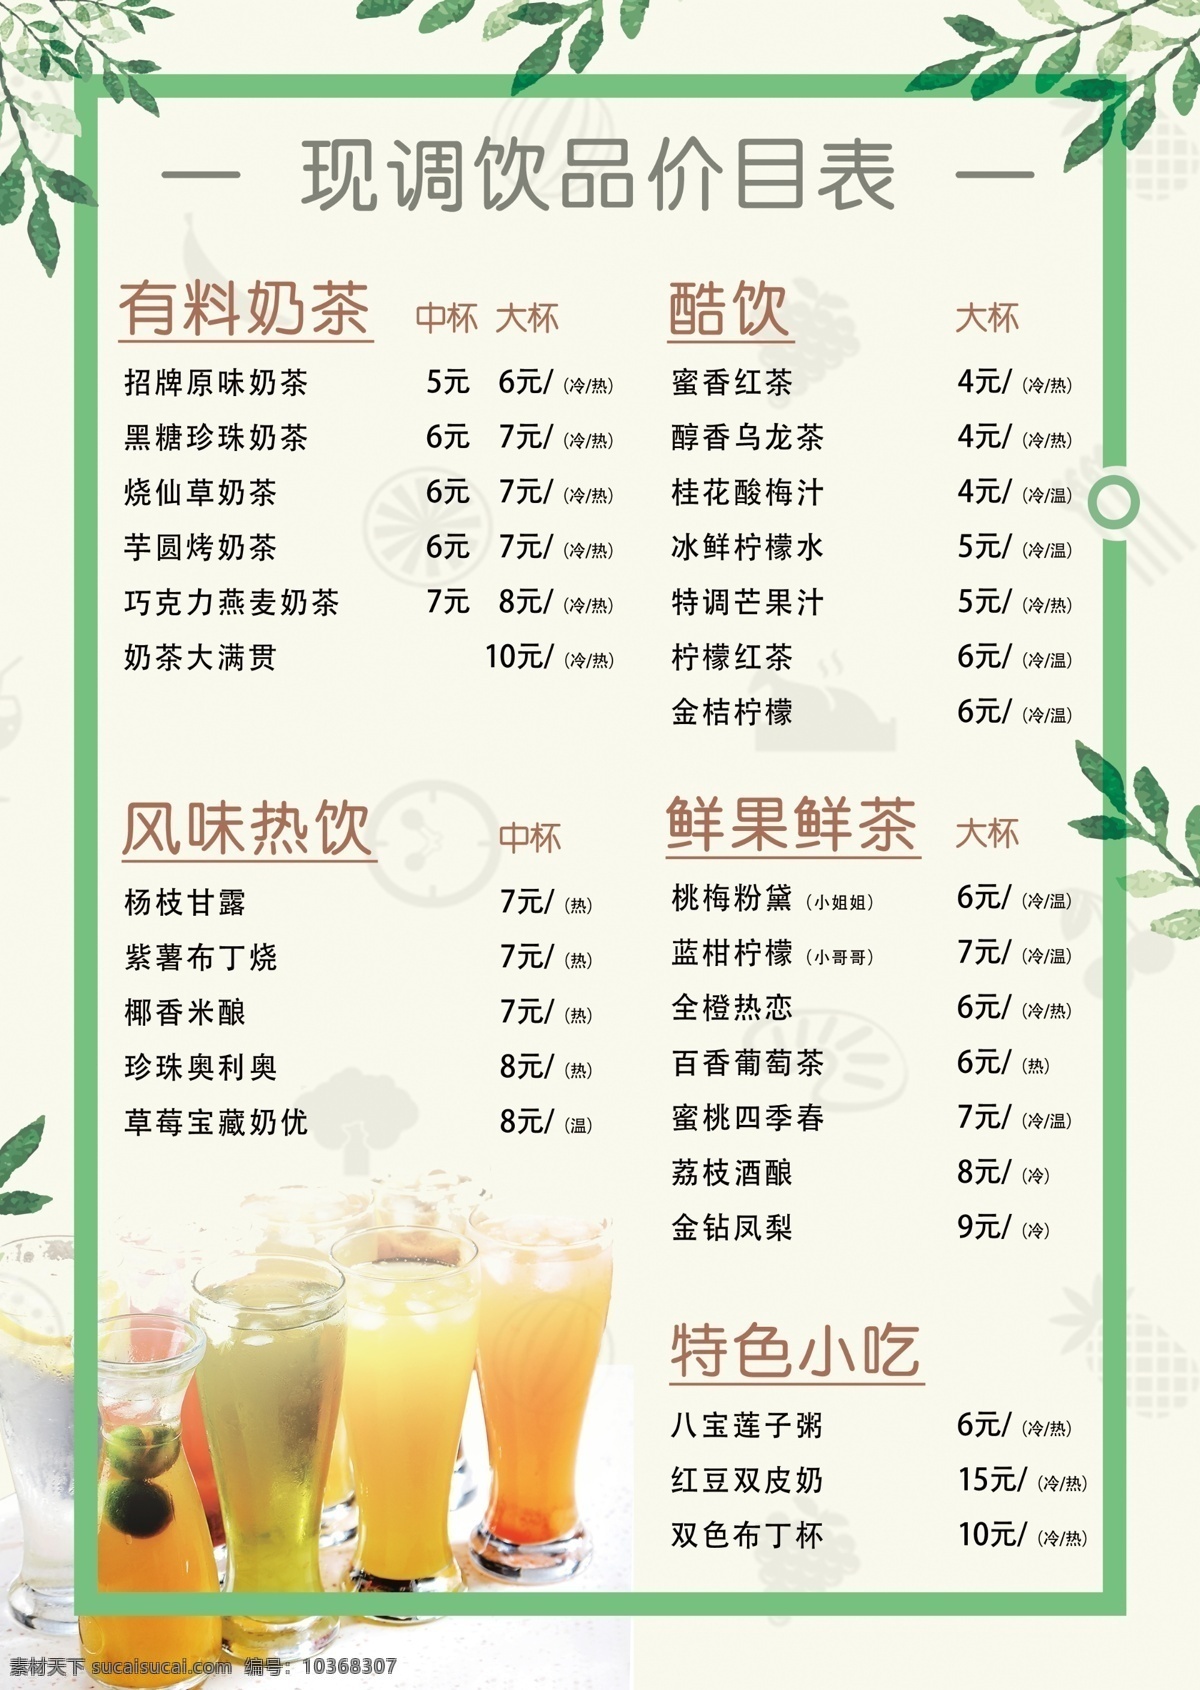 奶茶 菜单 价格 价目表 奶茶店 饮品 价格表